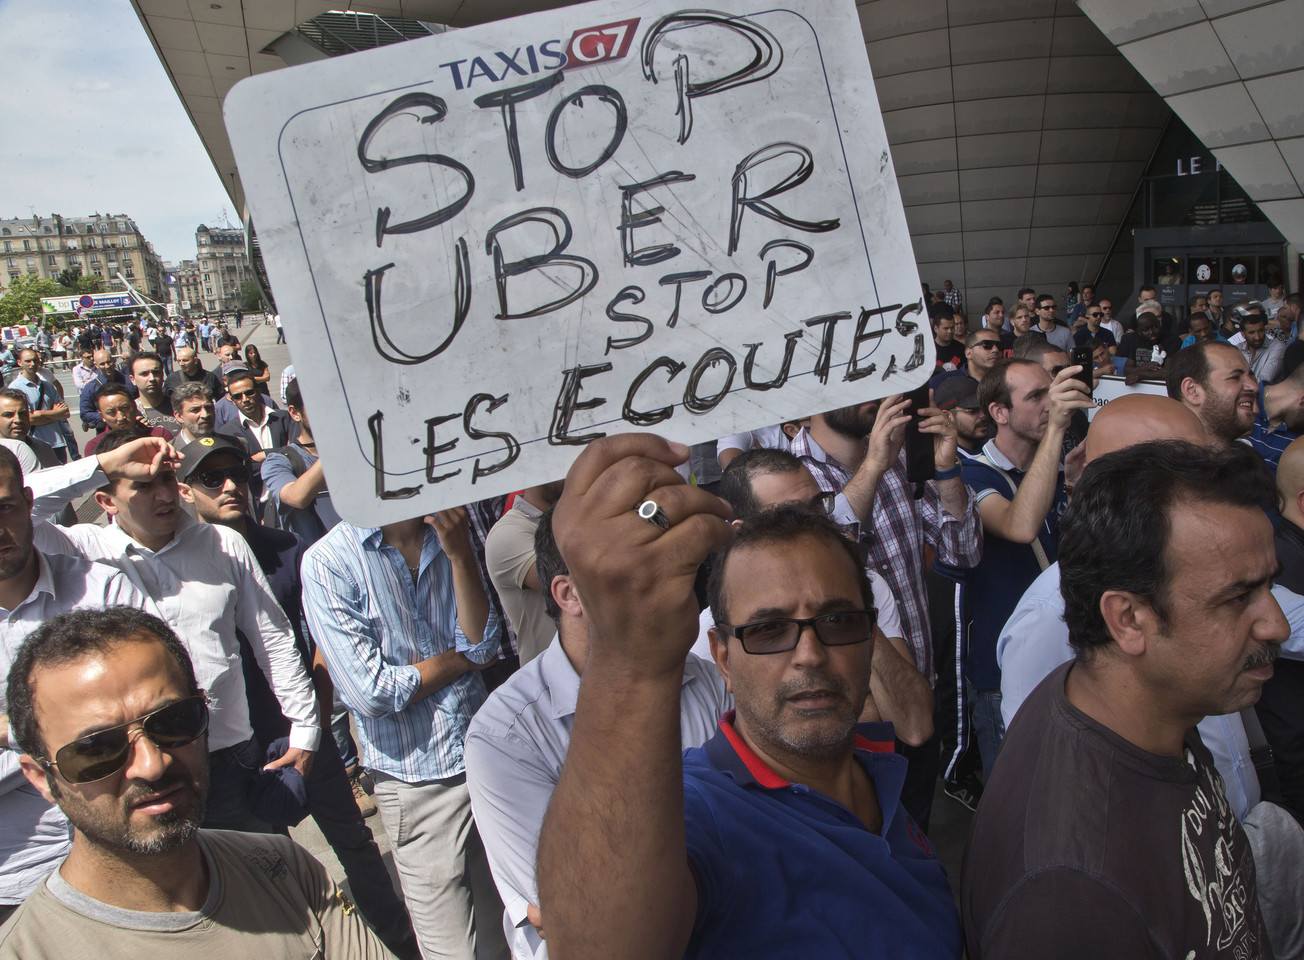 Prancūzijos taksistai protestuoja.<br>AP nuotr.